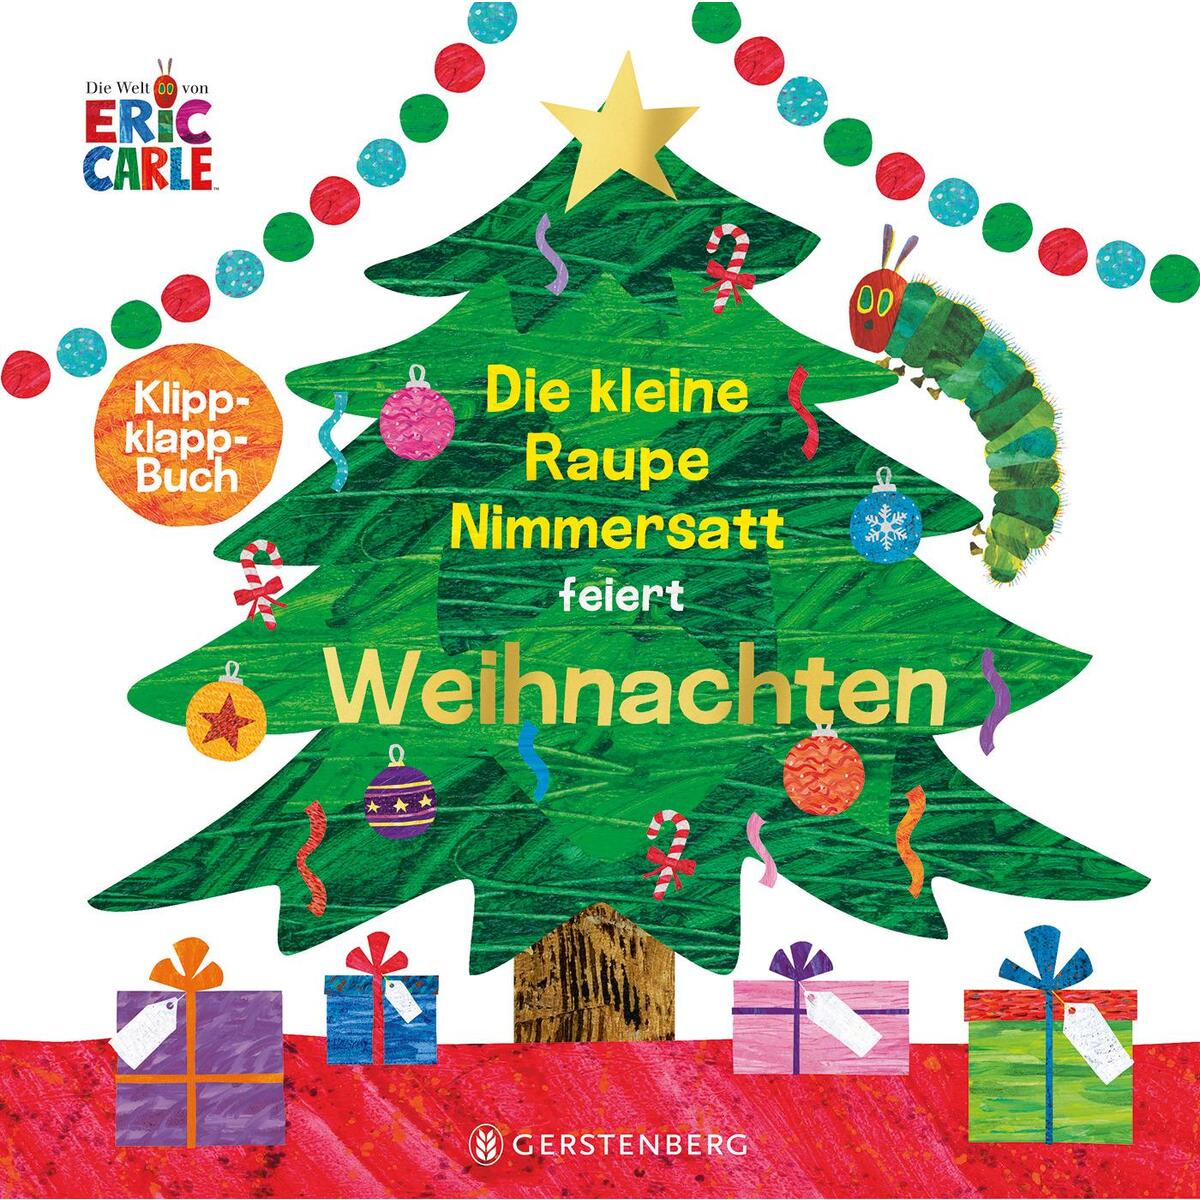 Die kleine Raupe Nimmersatt feiert Weihnachten von Gerstenberg Verlag